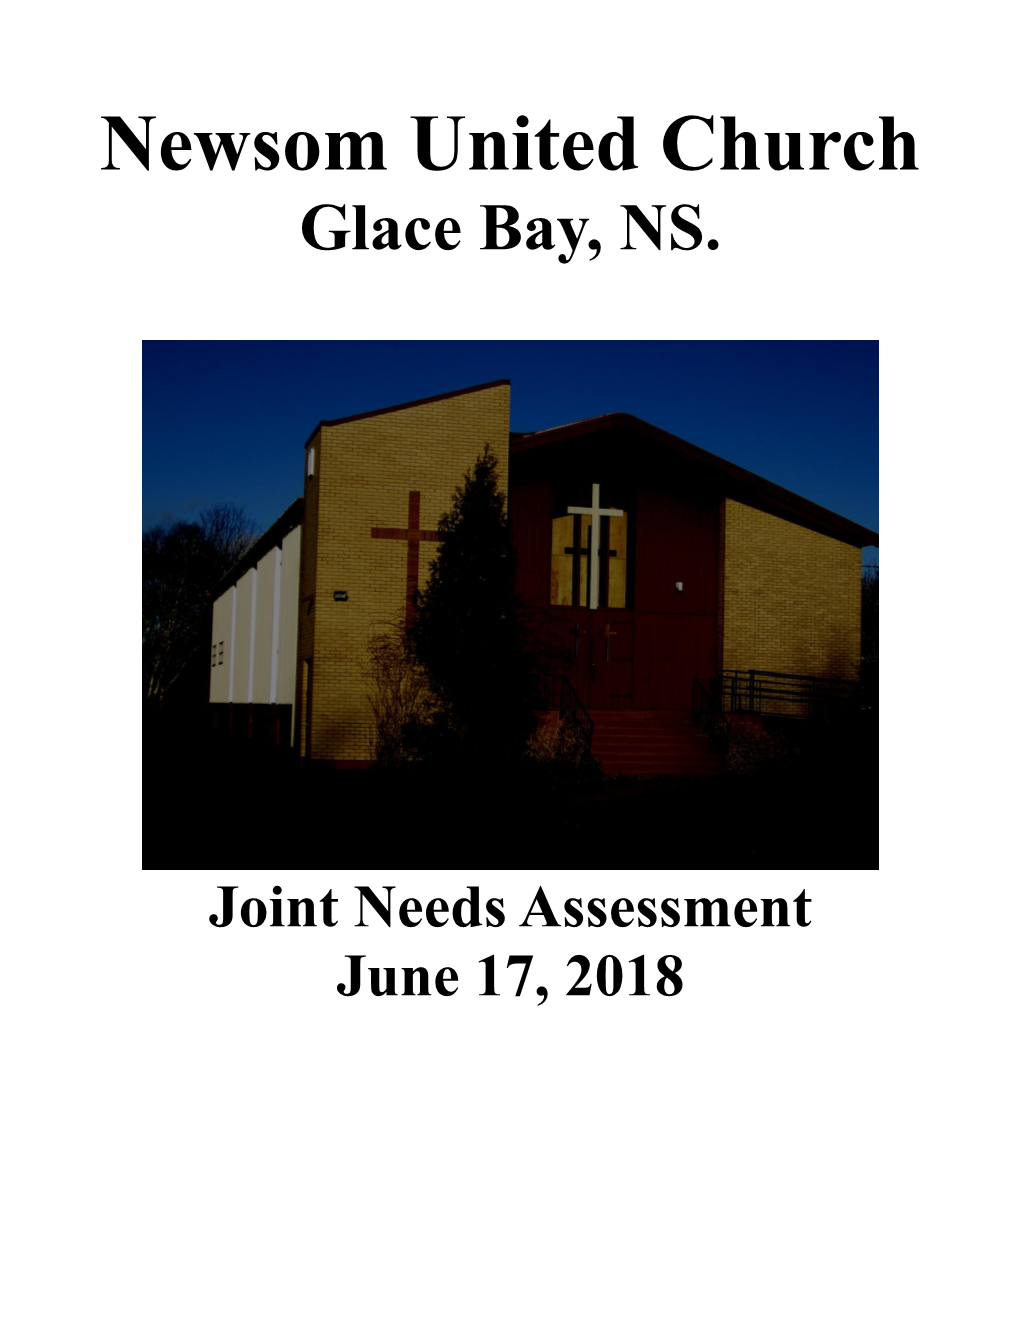 Newsom United Church Glace Bay, NS